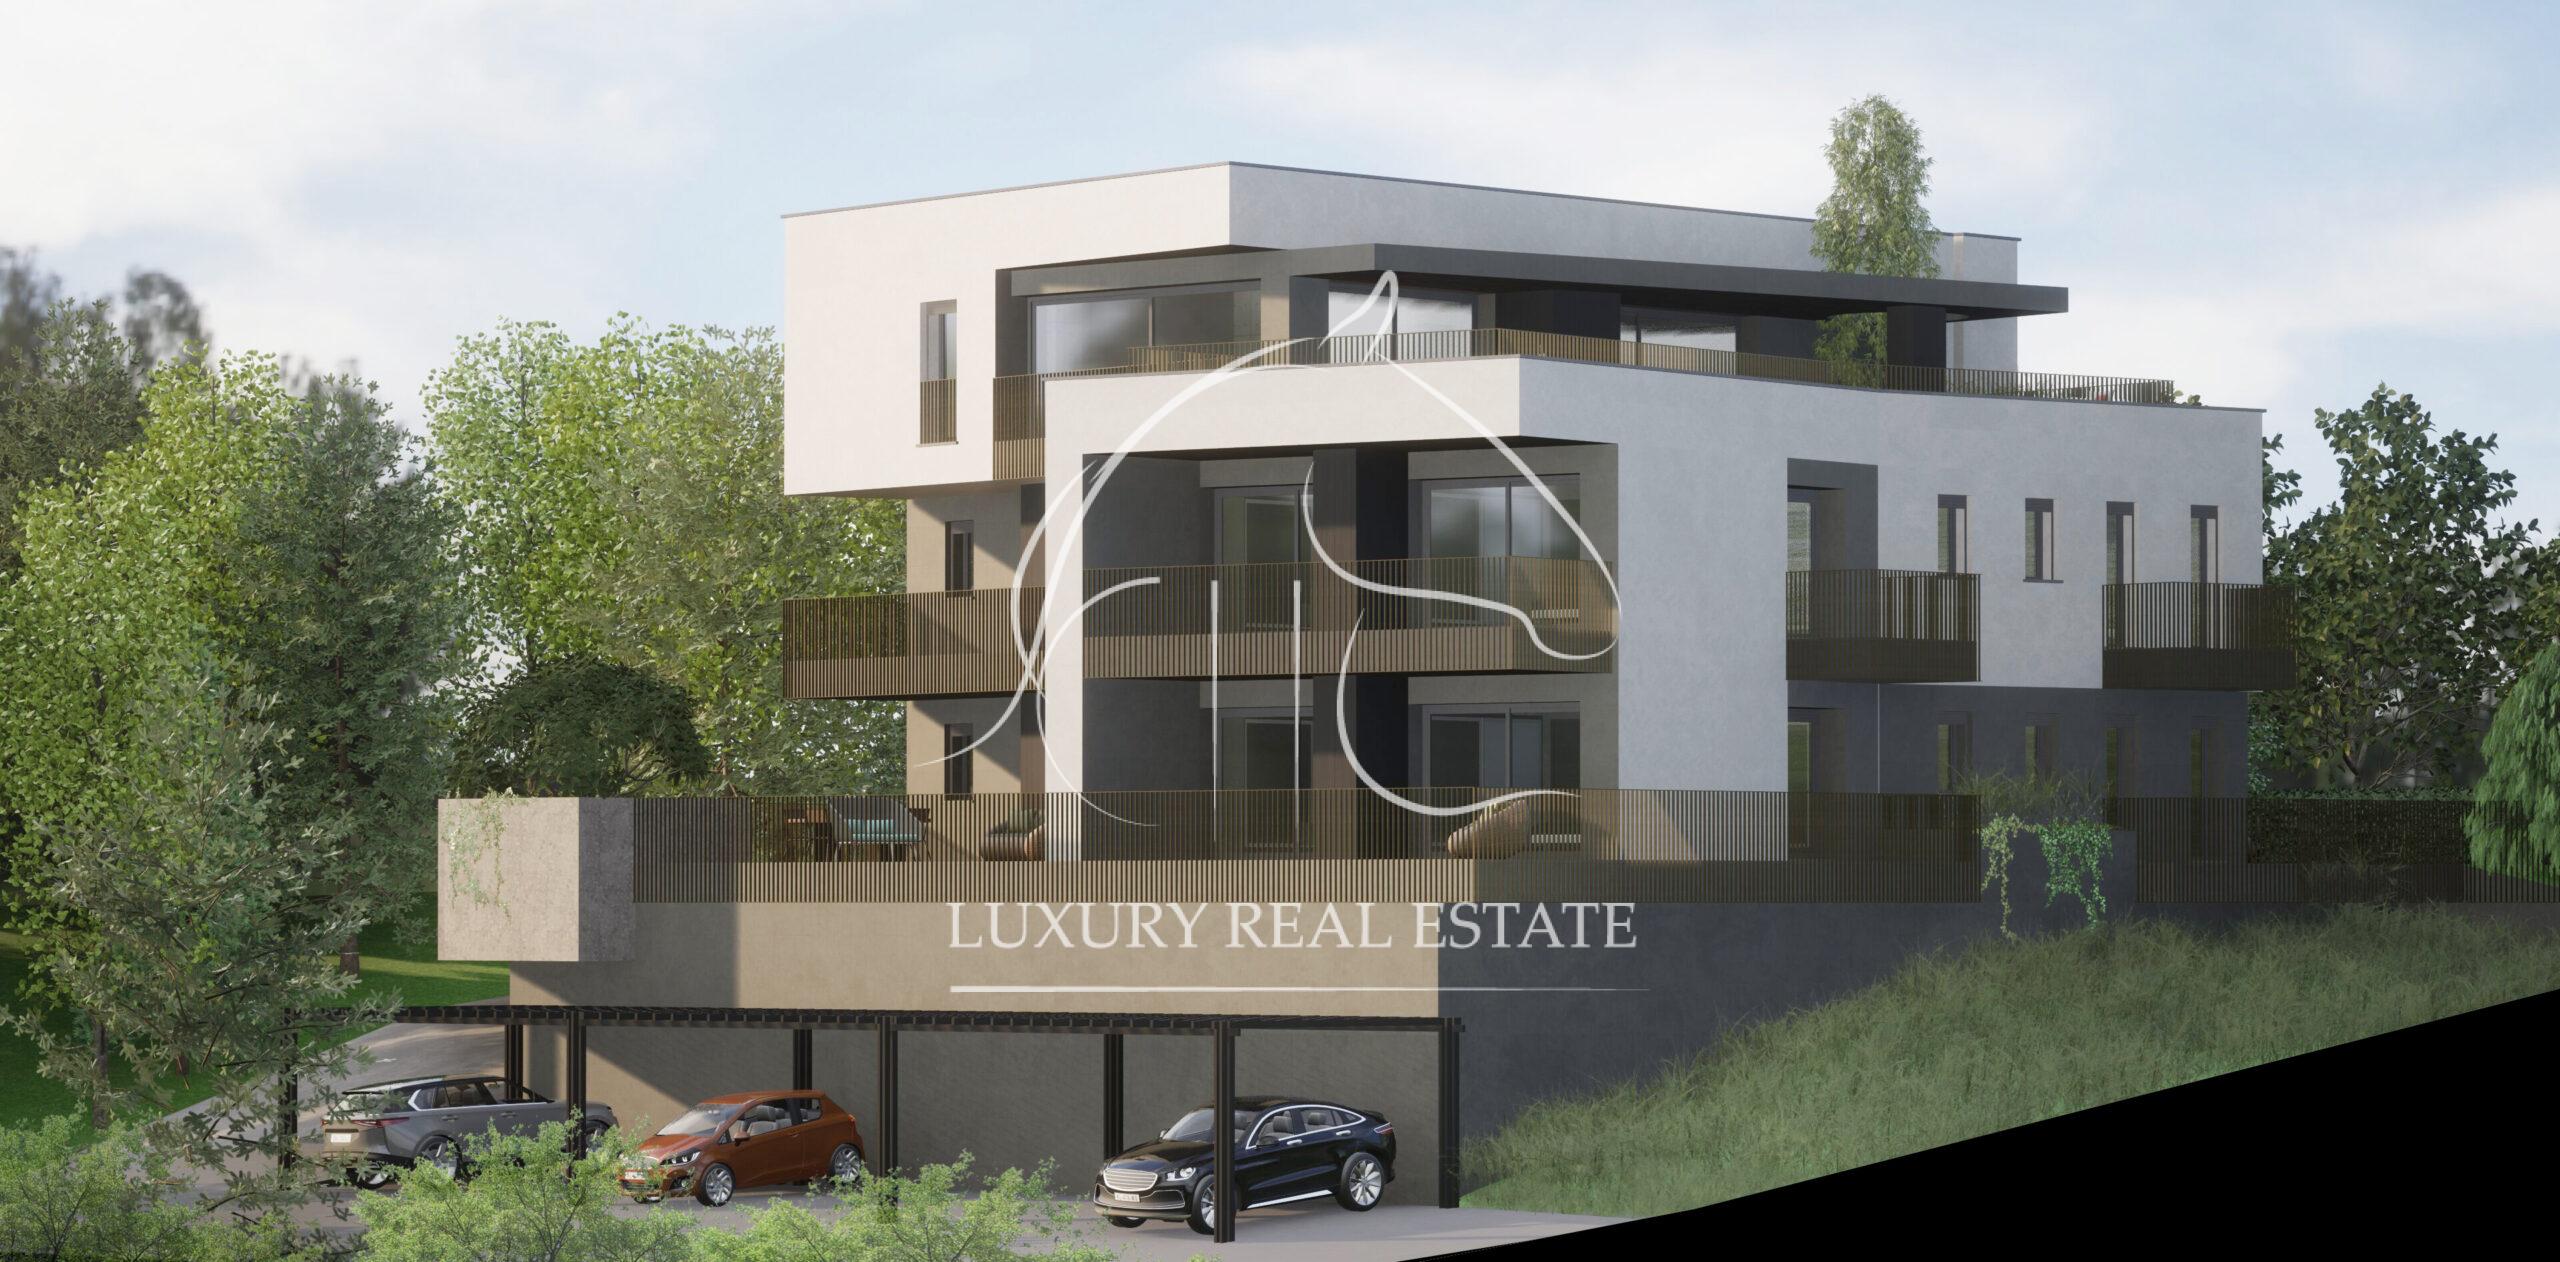 Rif. 462S1 SERRAVALLE Attico in Residence moderno e design in costruzione – n° 2  UNITA’ RIMASTE!